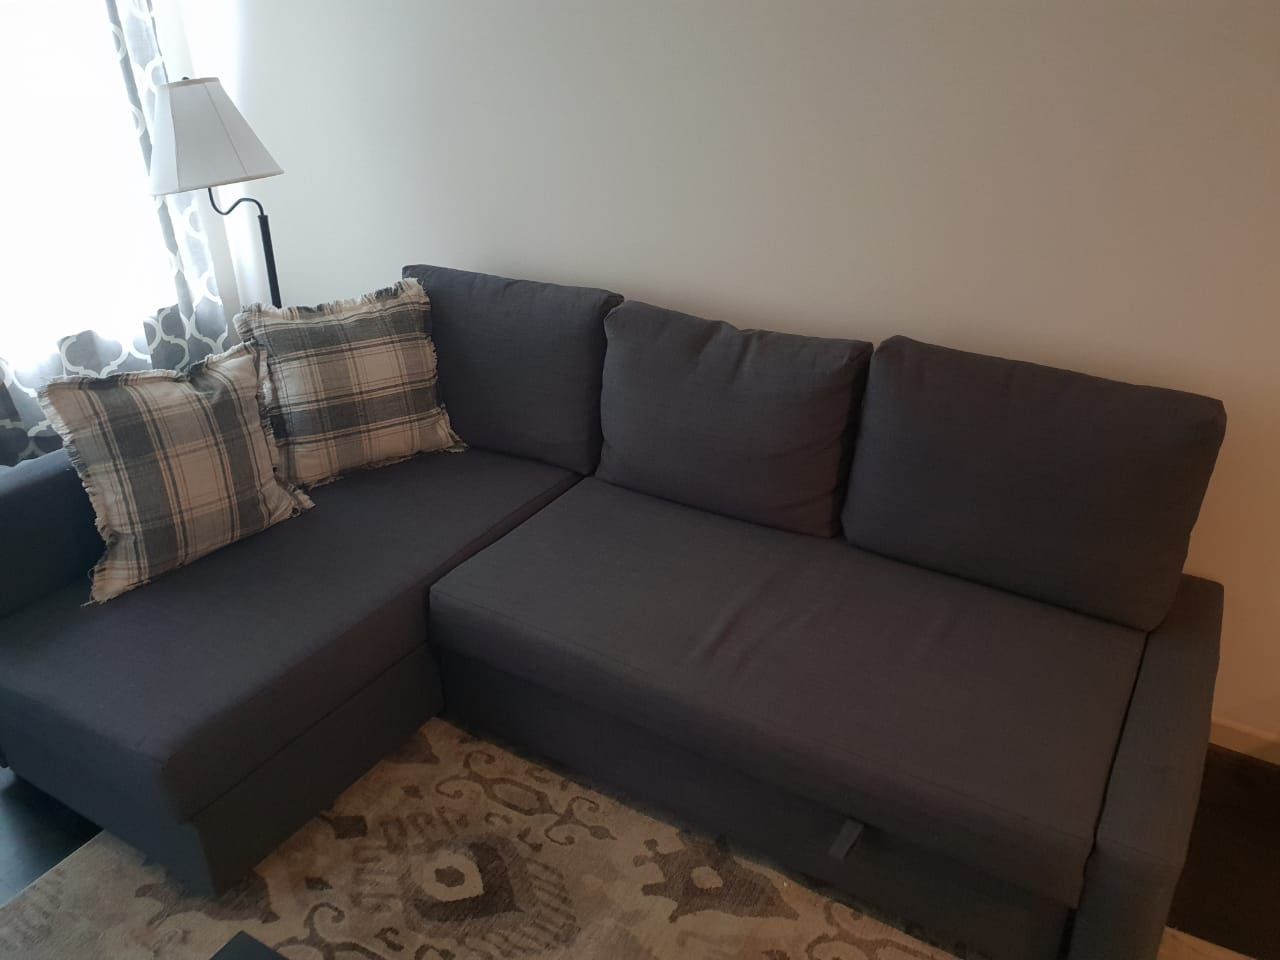 Sofa bed IKEA gray color L shape